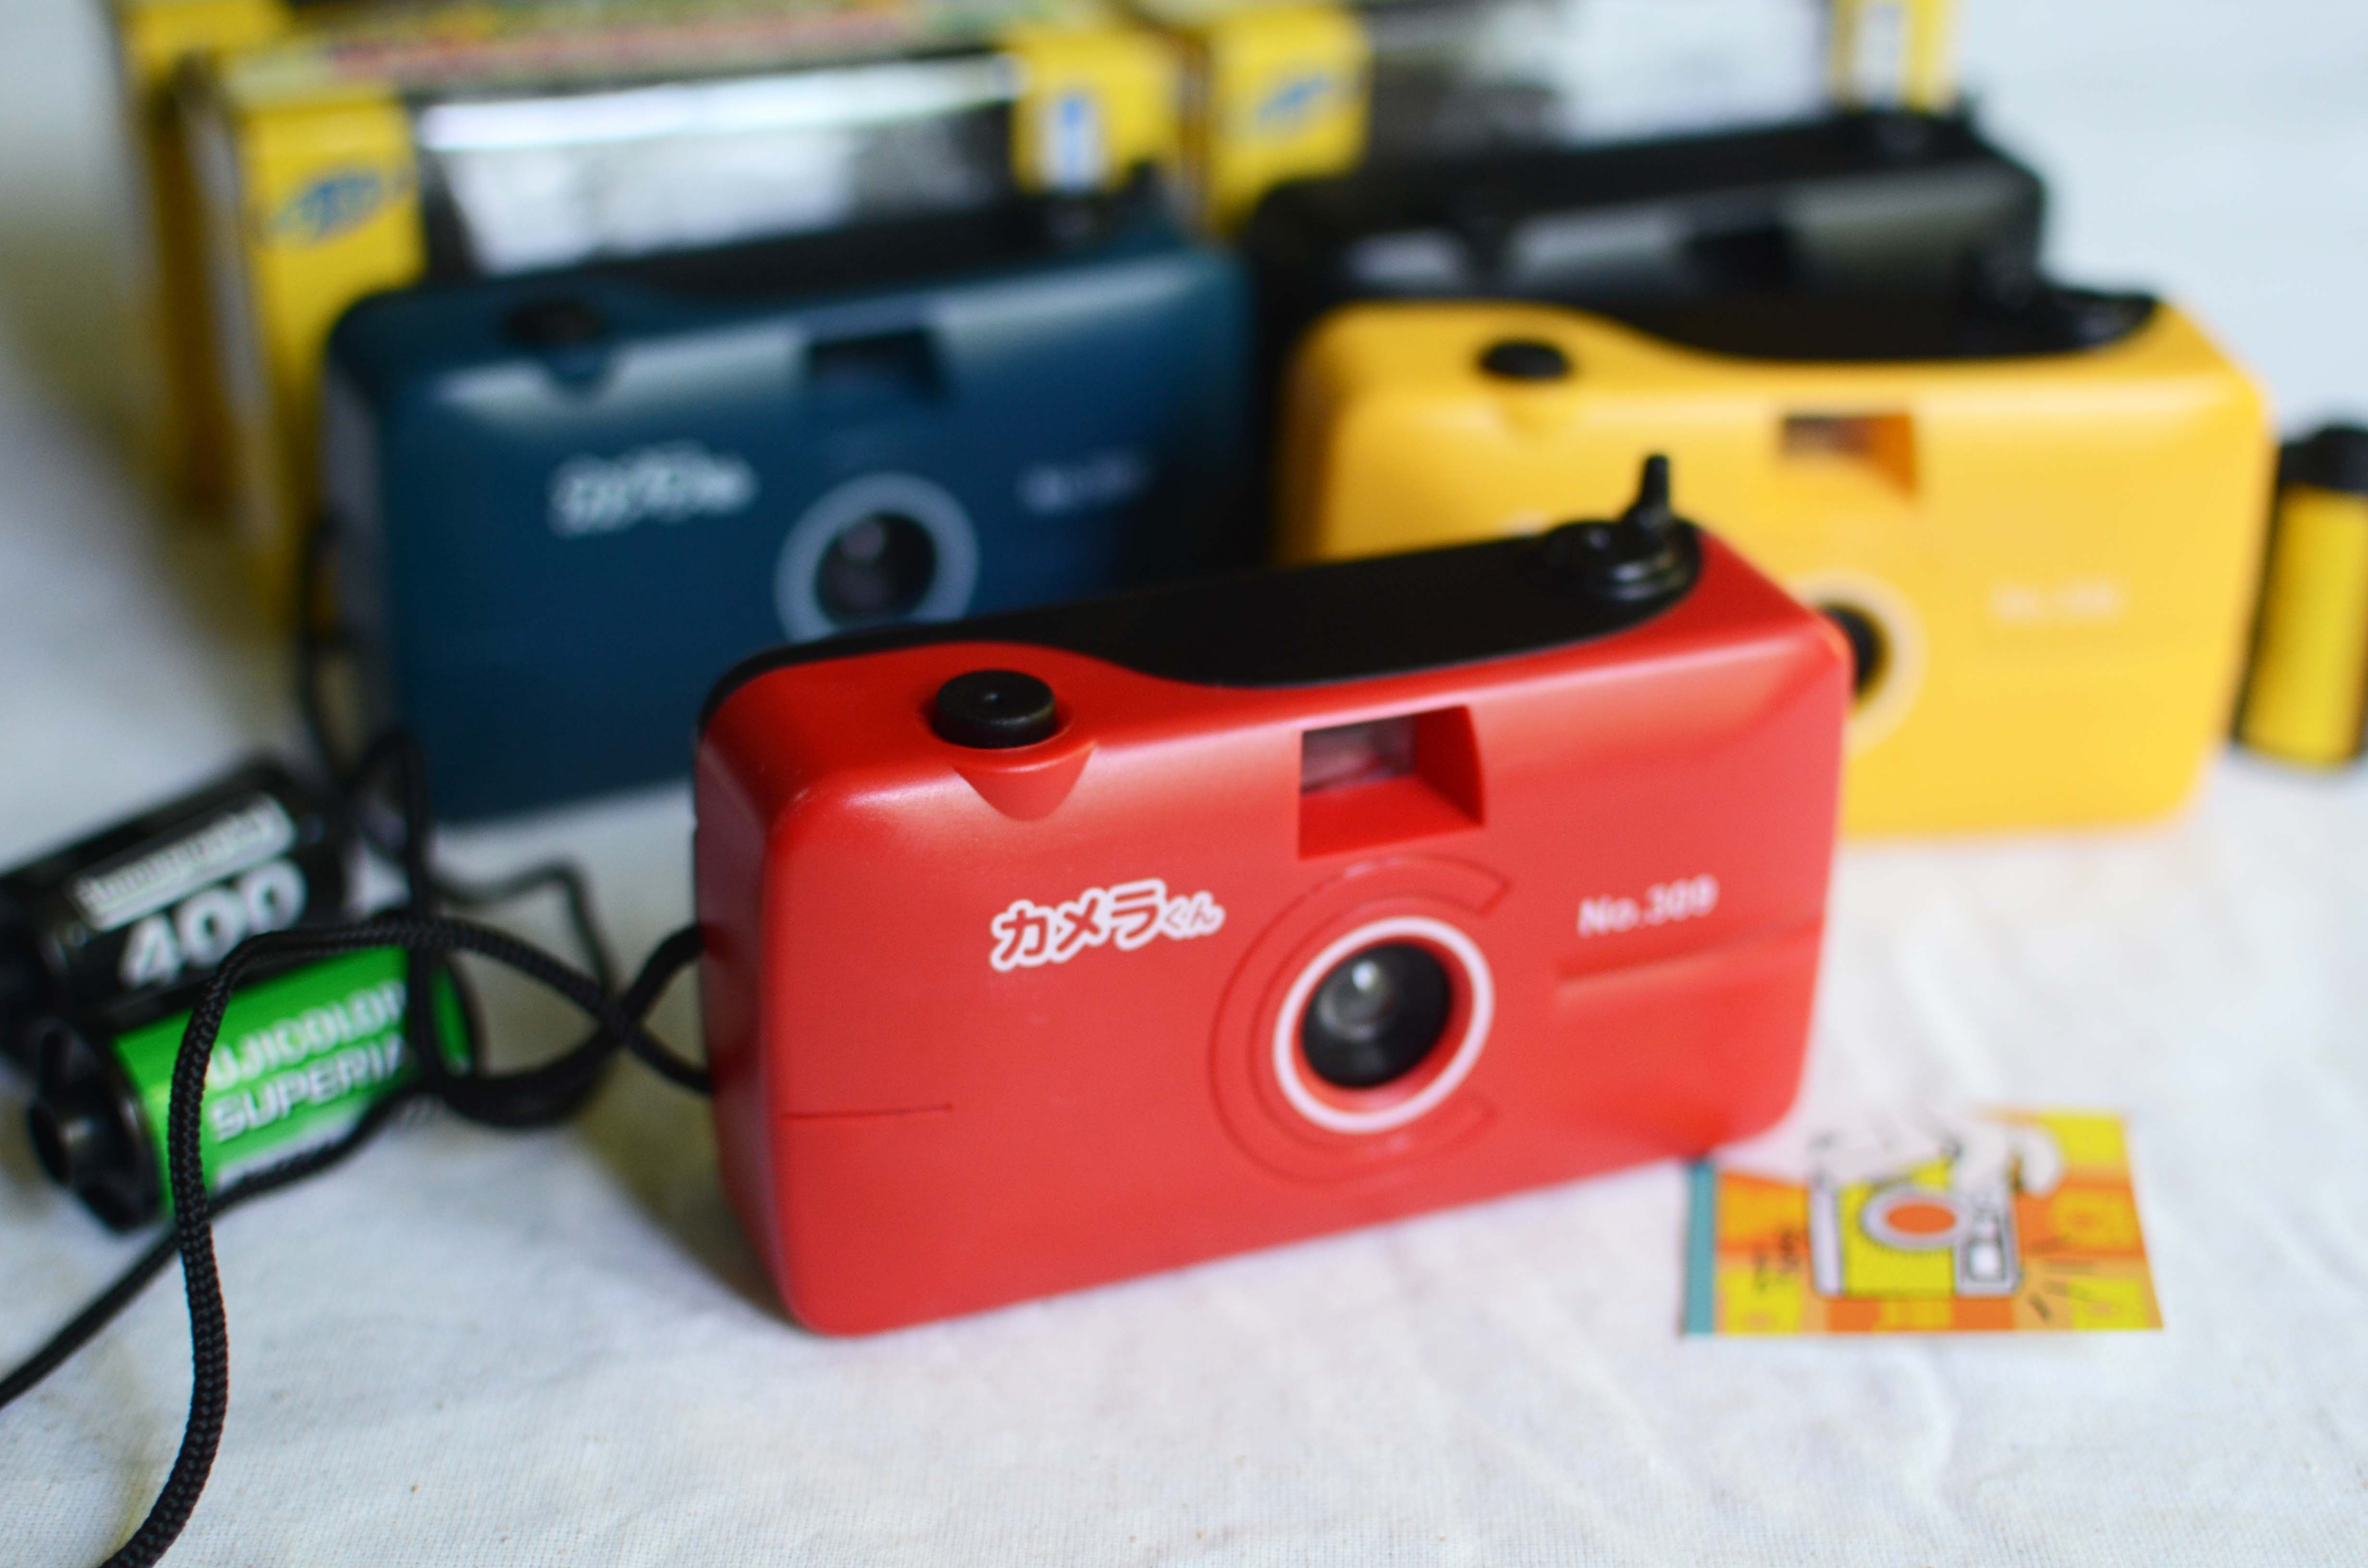 กล้องฟิล์ม กล้องทอย Japan (งานกล่อง) มี 4 สี